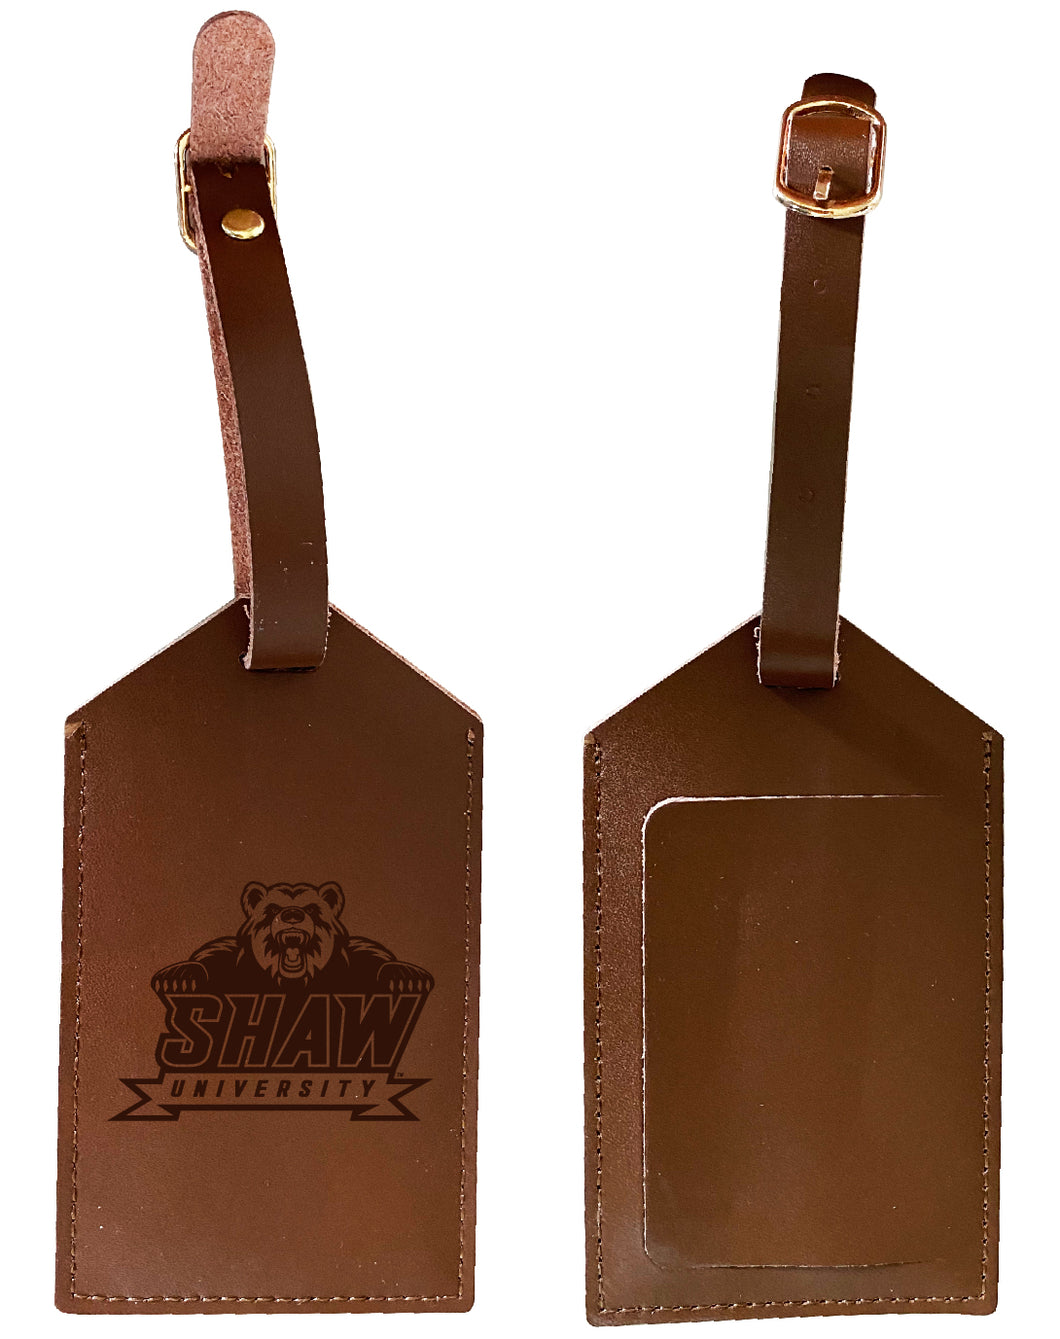 Elegant Shaw University Bears NCAA Leather Luggage Tag with Engraved Logo